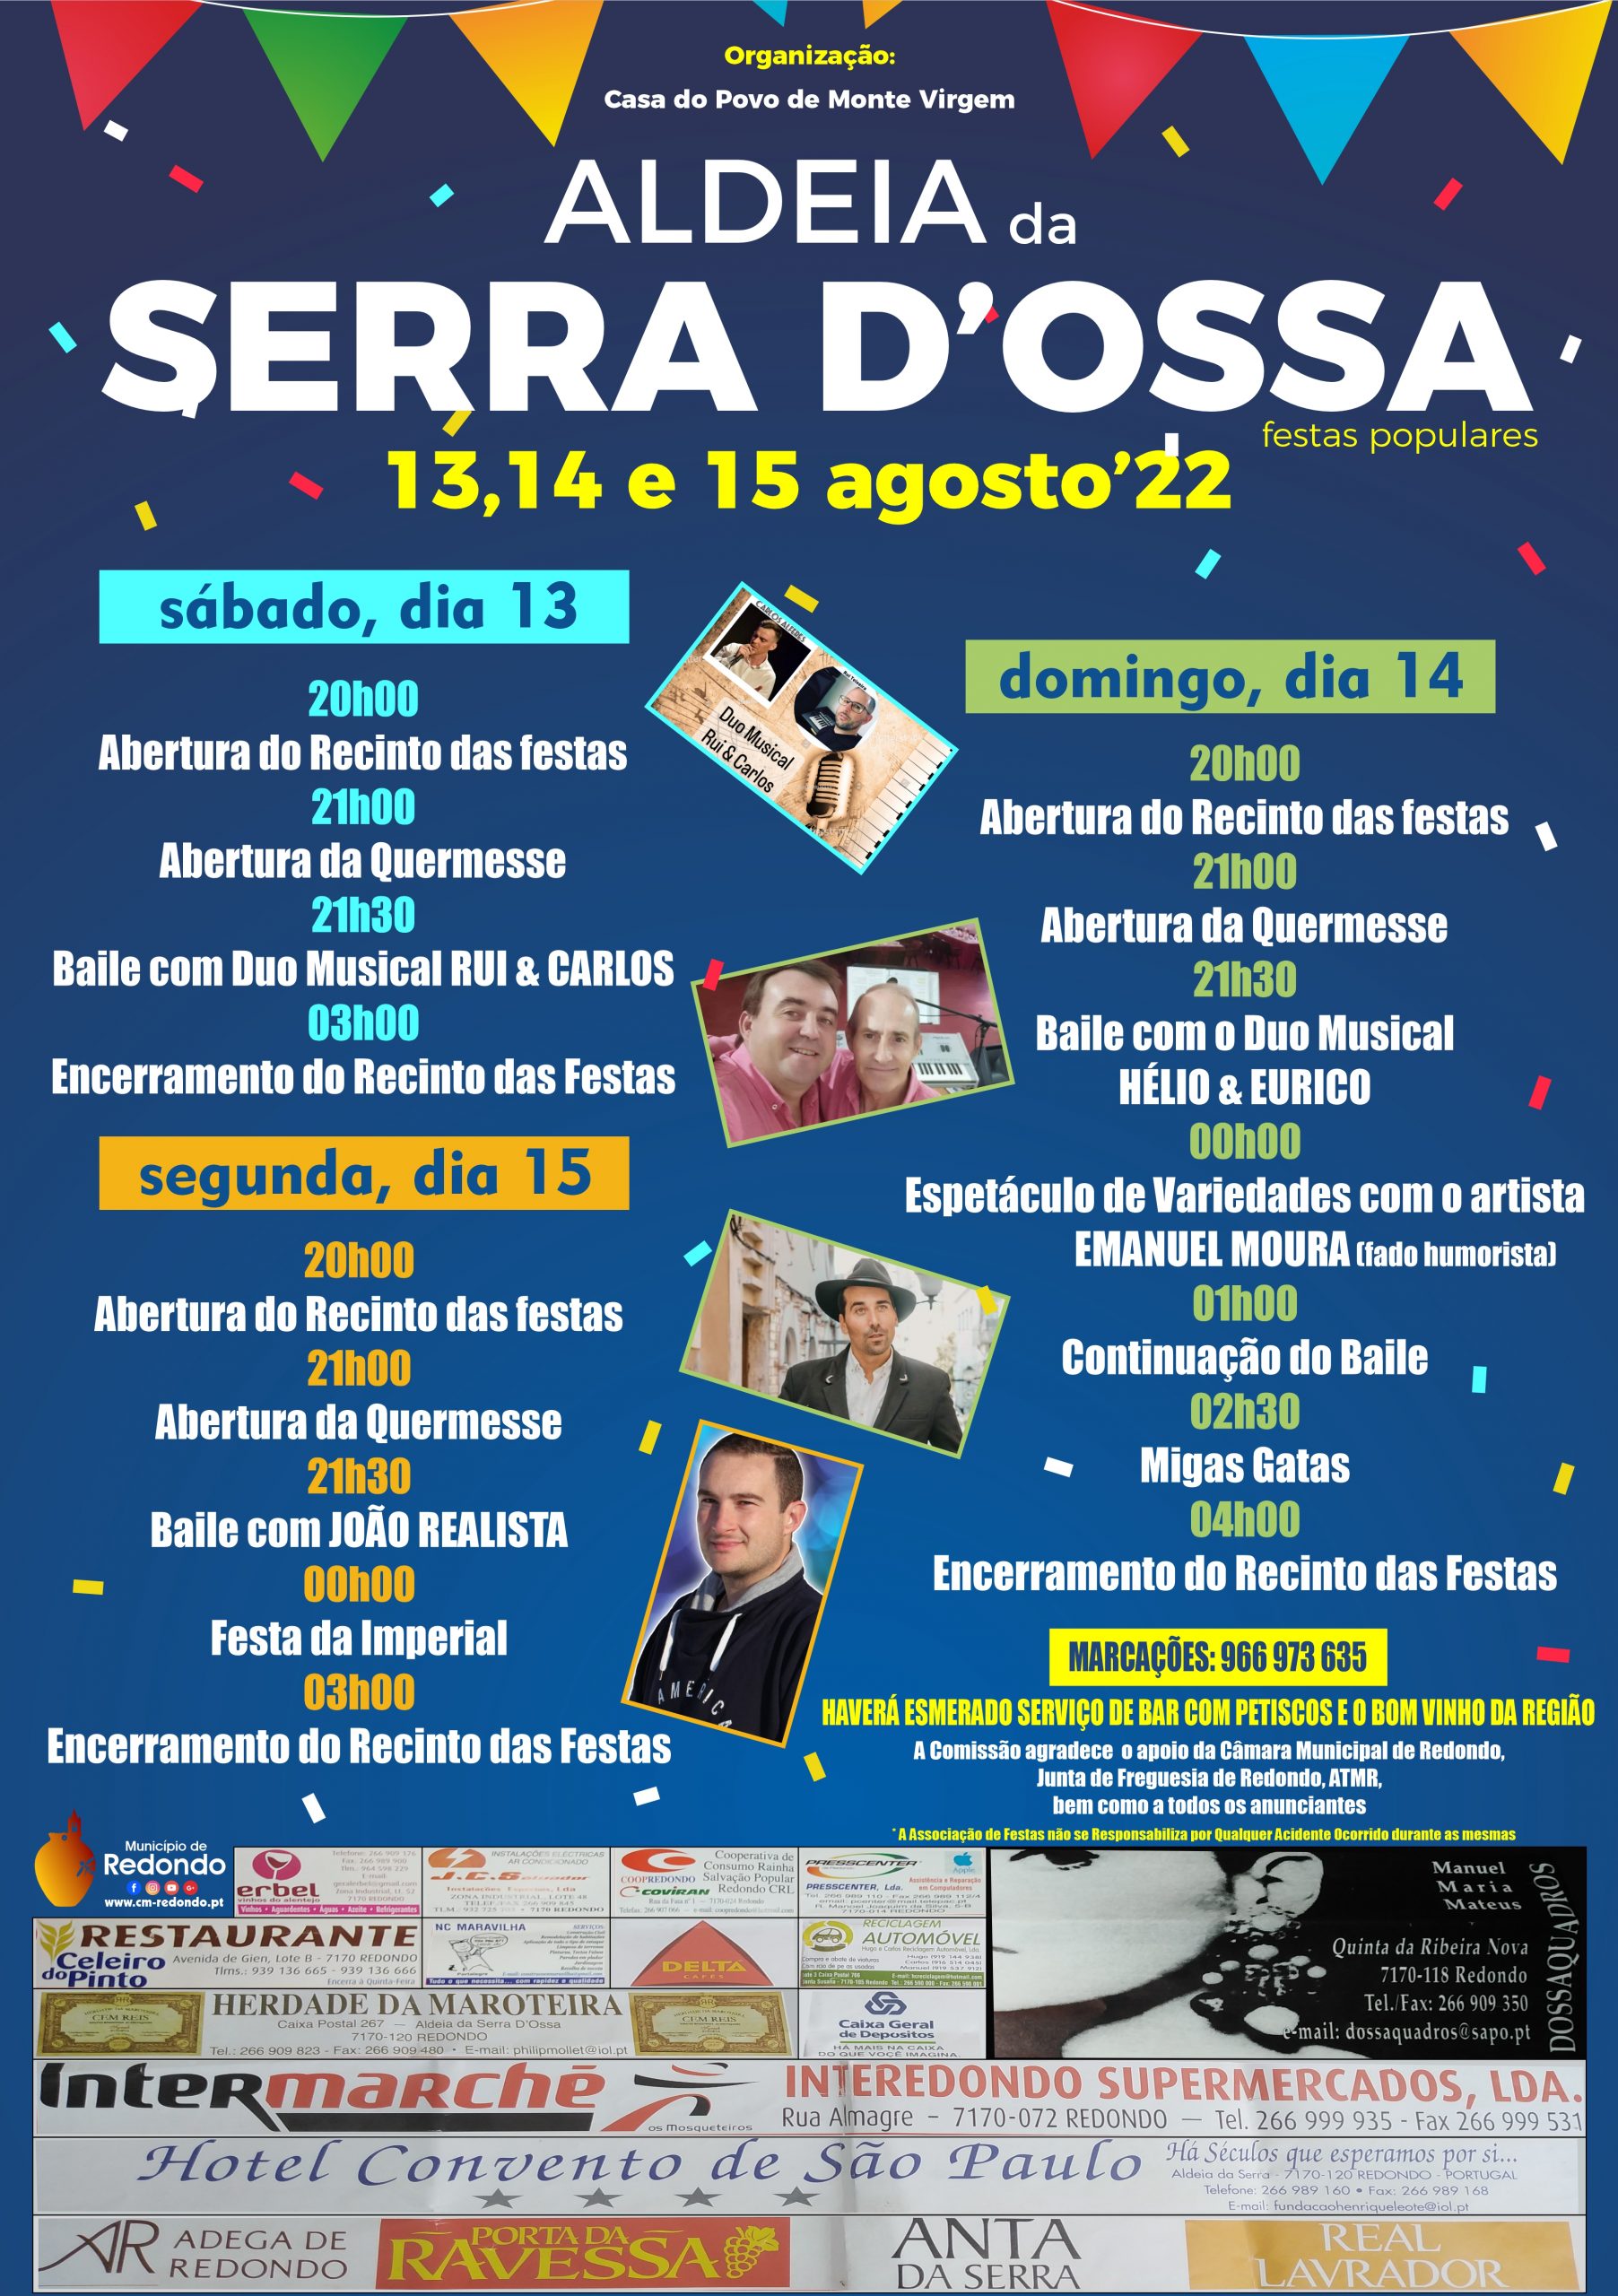 Festas de Verão | Aldeia da Serra D’Ossa | 13, 14 e 15 de agosto